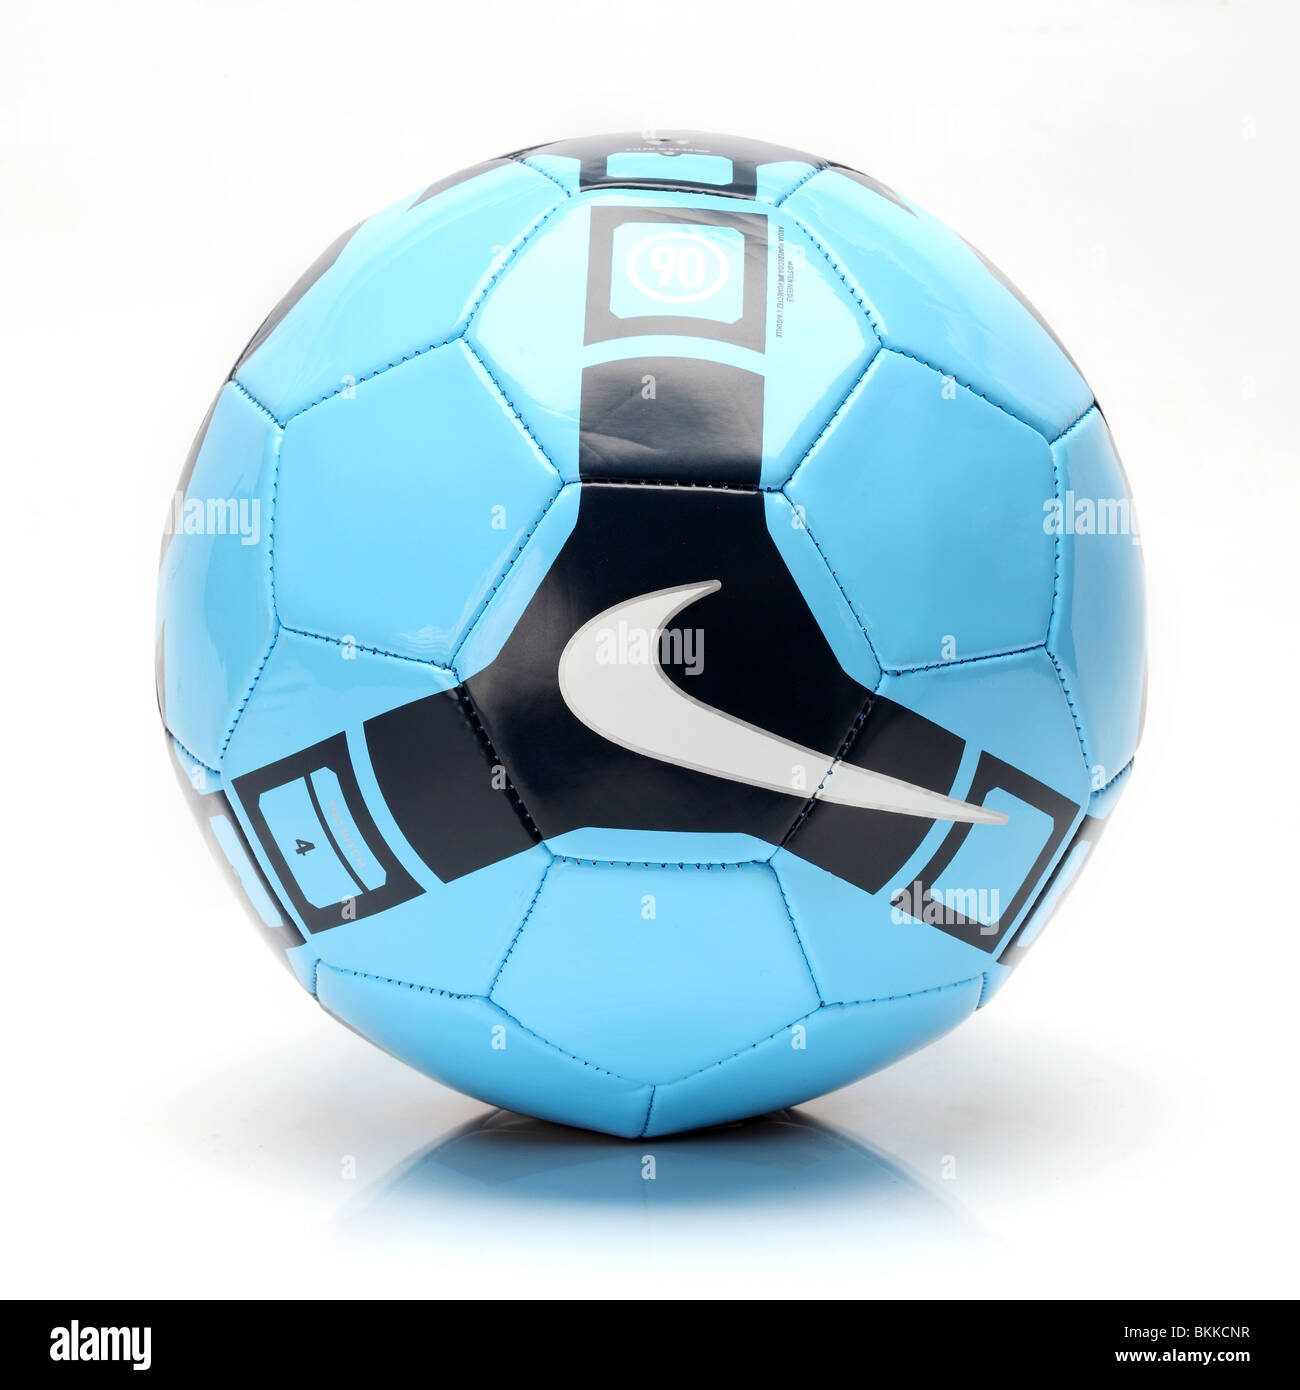 Ballon Nike Premier League Pitch - Entraînement football - Vert électrique  - Noir - Blanc